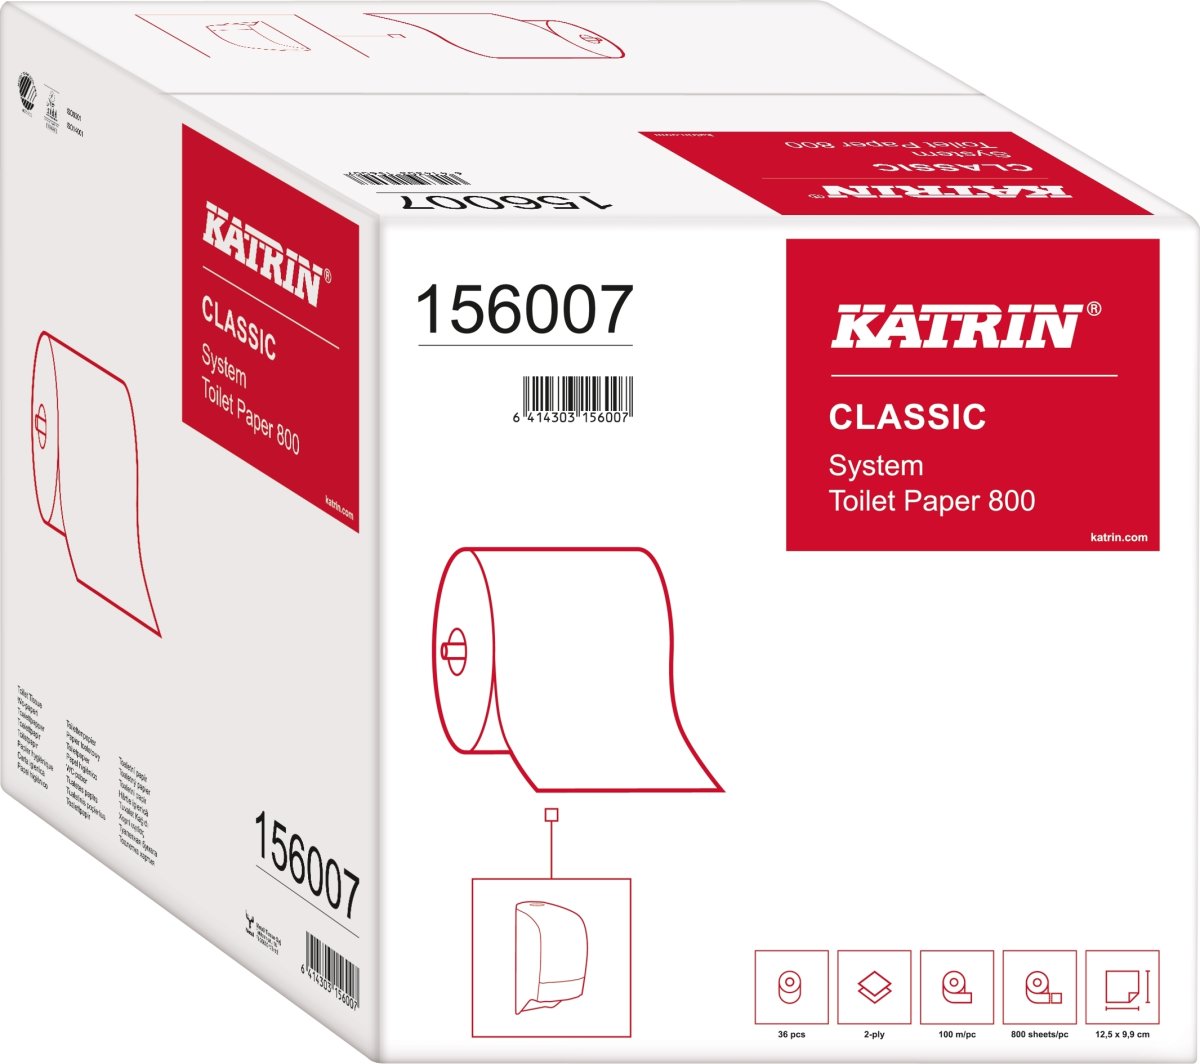 Katrin Classic Toiletpapir til systemdispenser